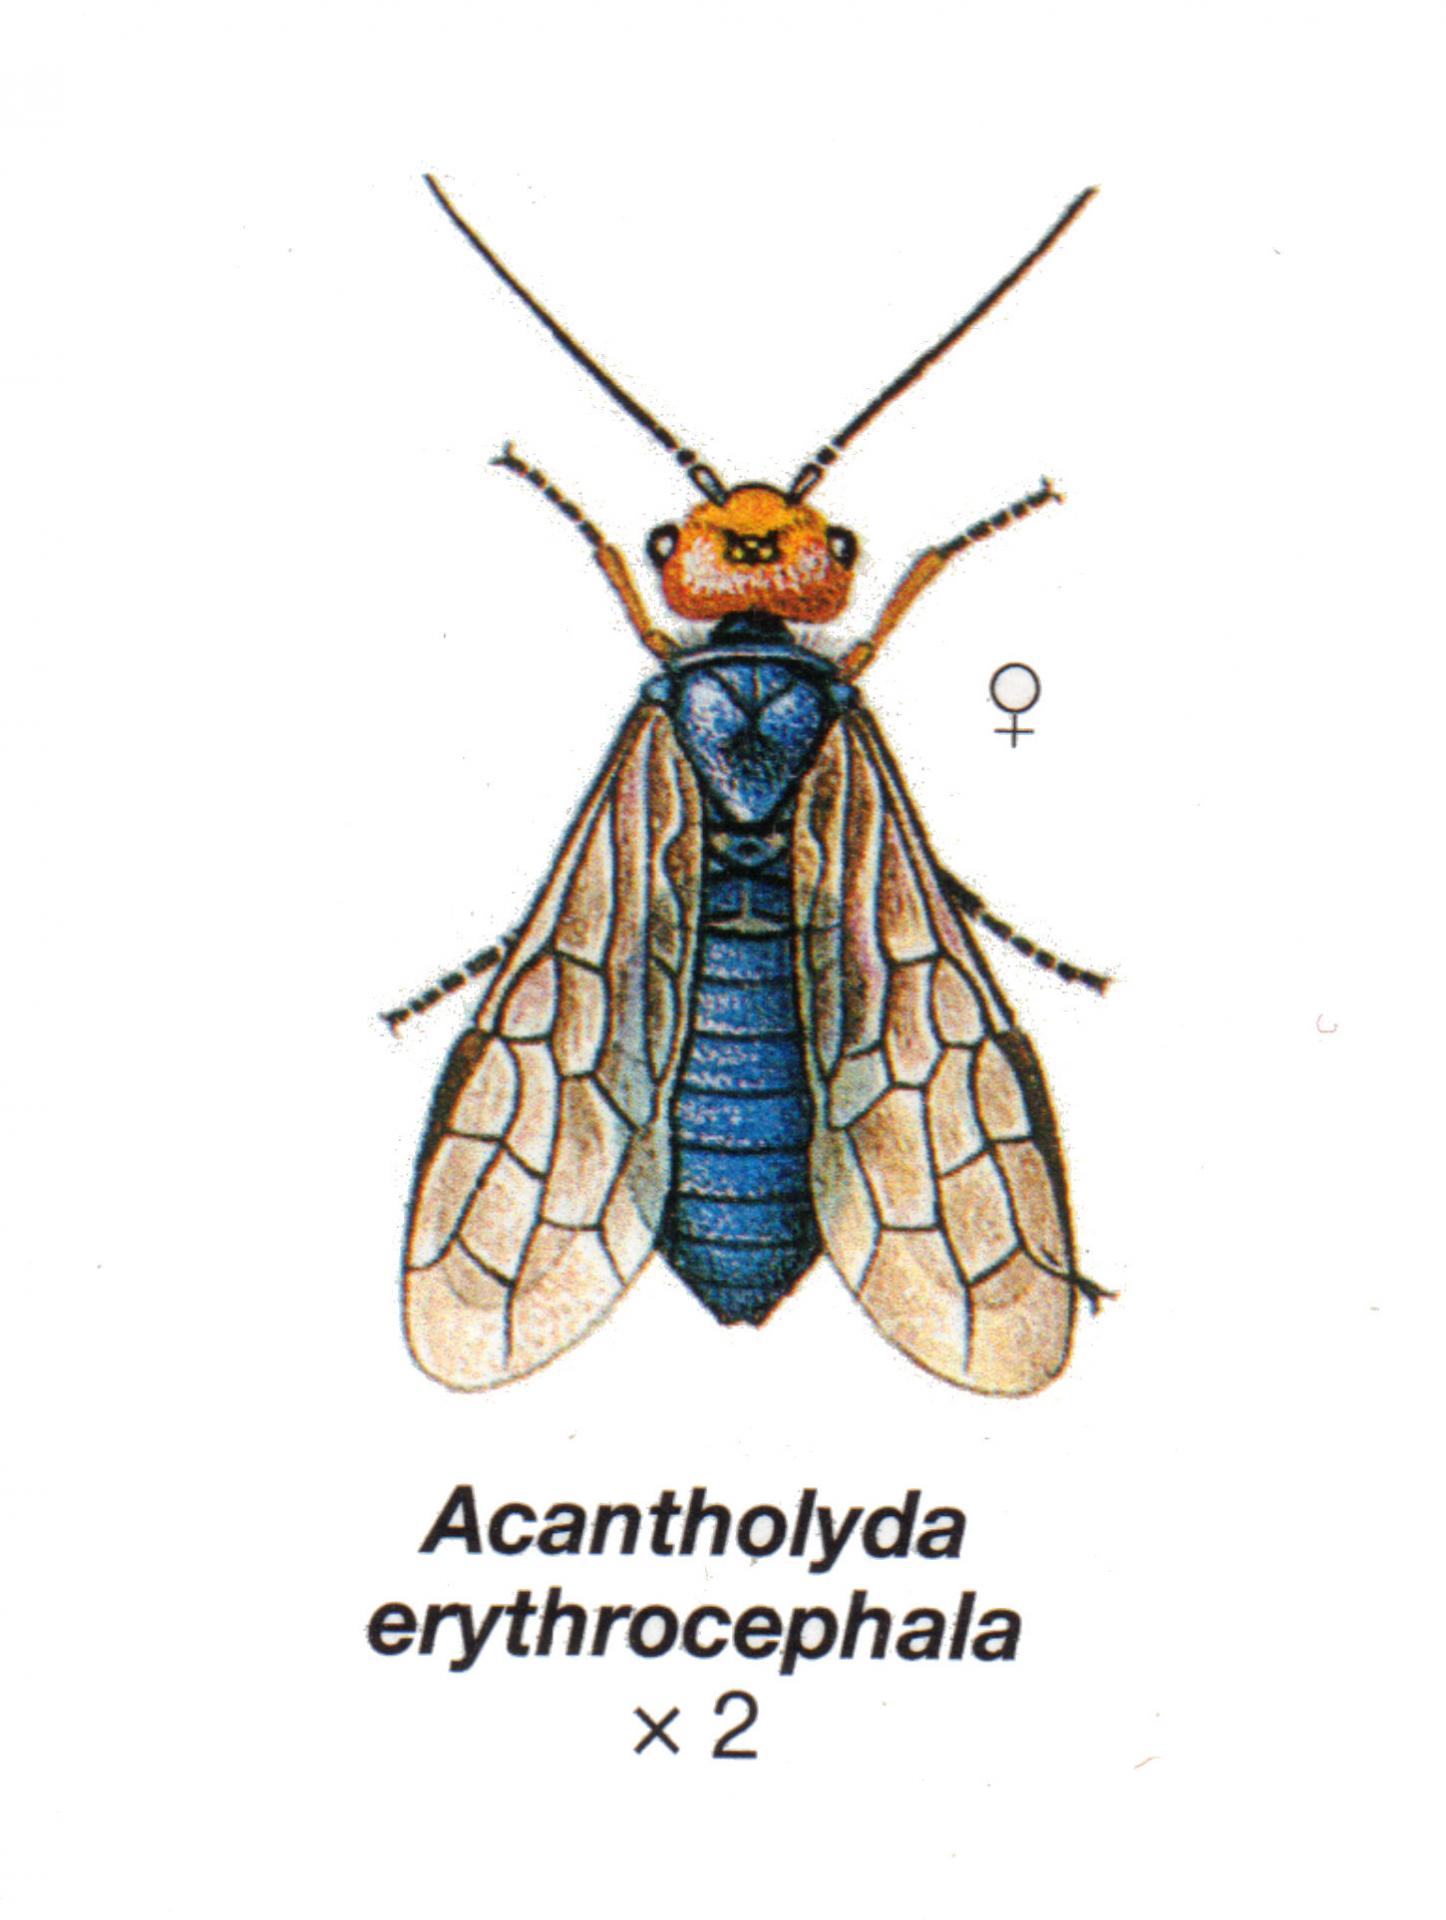 Acantholyda erythocephala